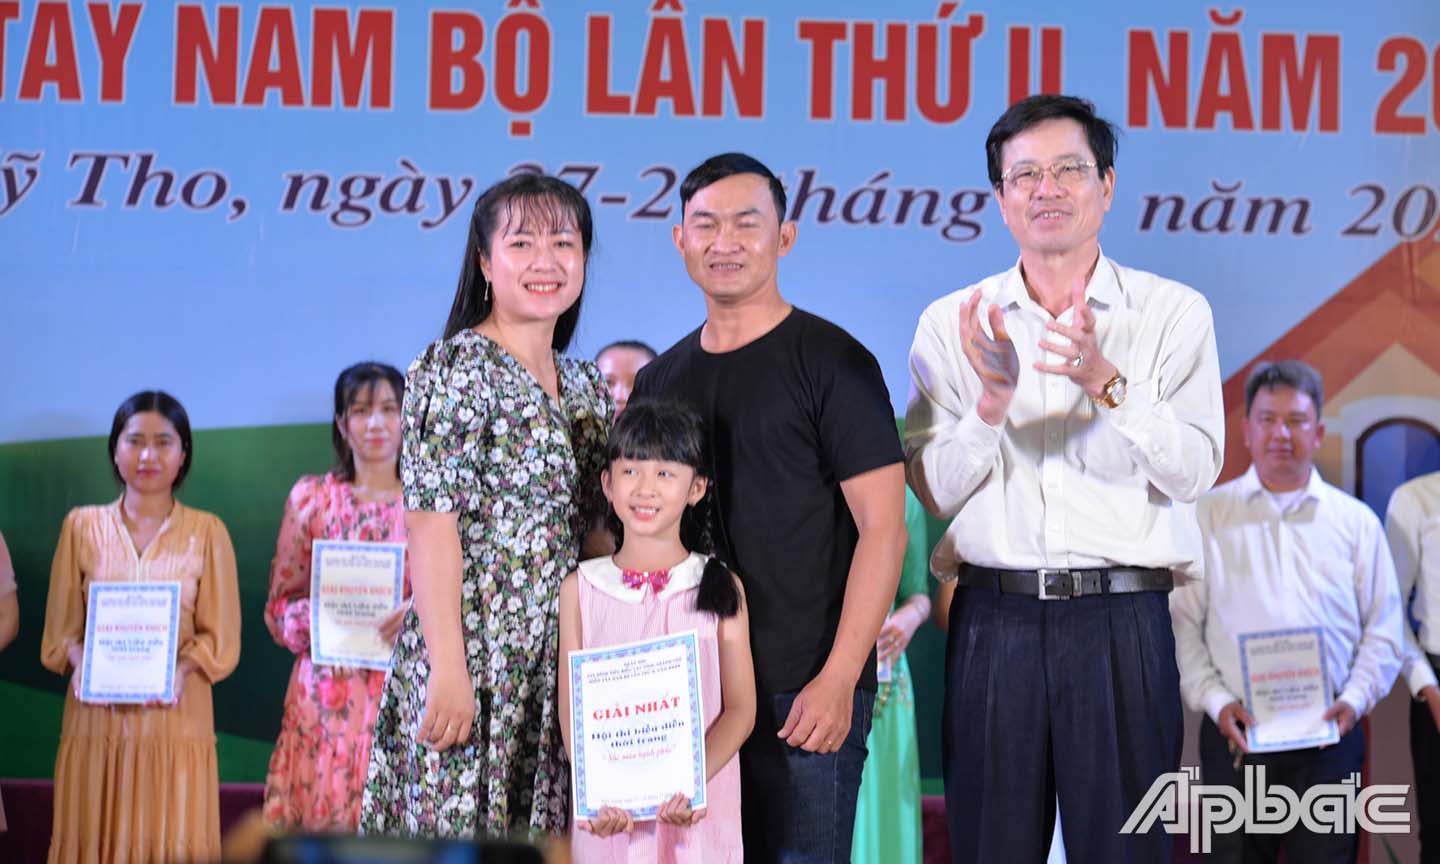 Đồng chí Lê Văn Dũng, Phó Giám đốc Sở VH-TT&DL trao giấy chứng nhận cho gia đình thuộc tỉnh Đồng Tháp đạt giải Nhất phần thi biểu diễn thời trang.